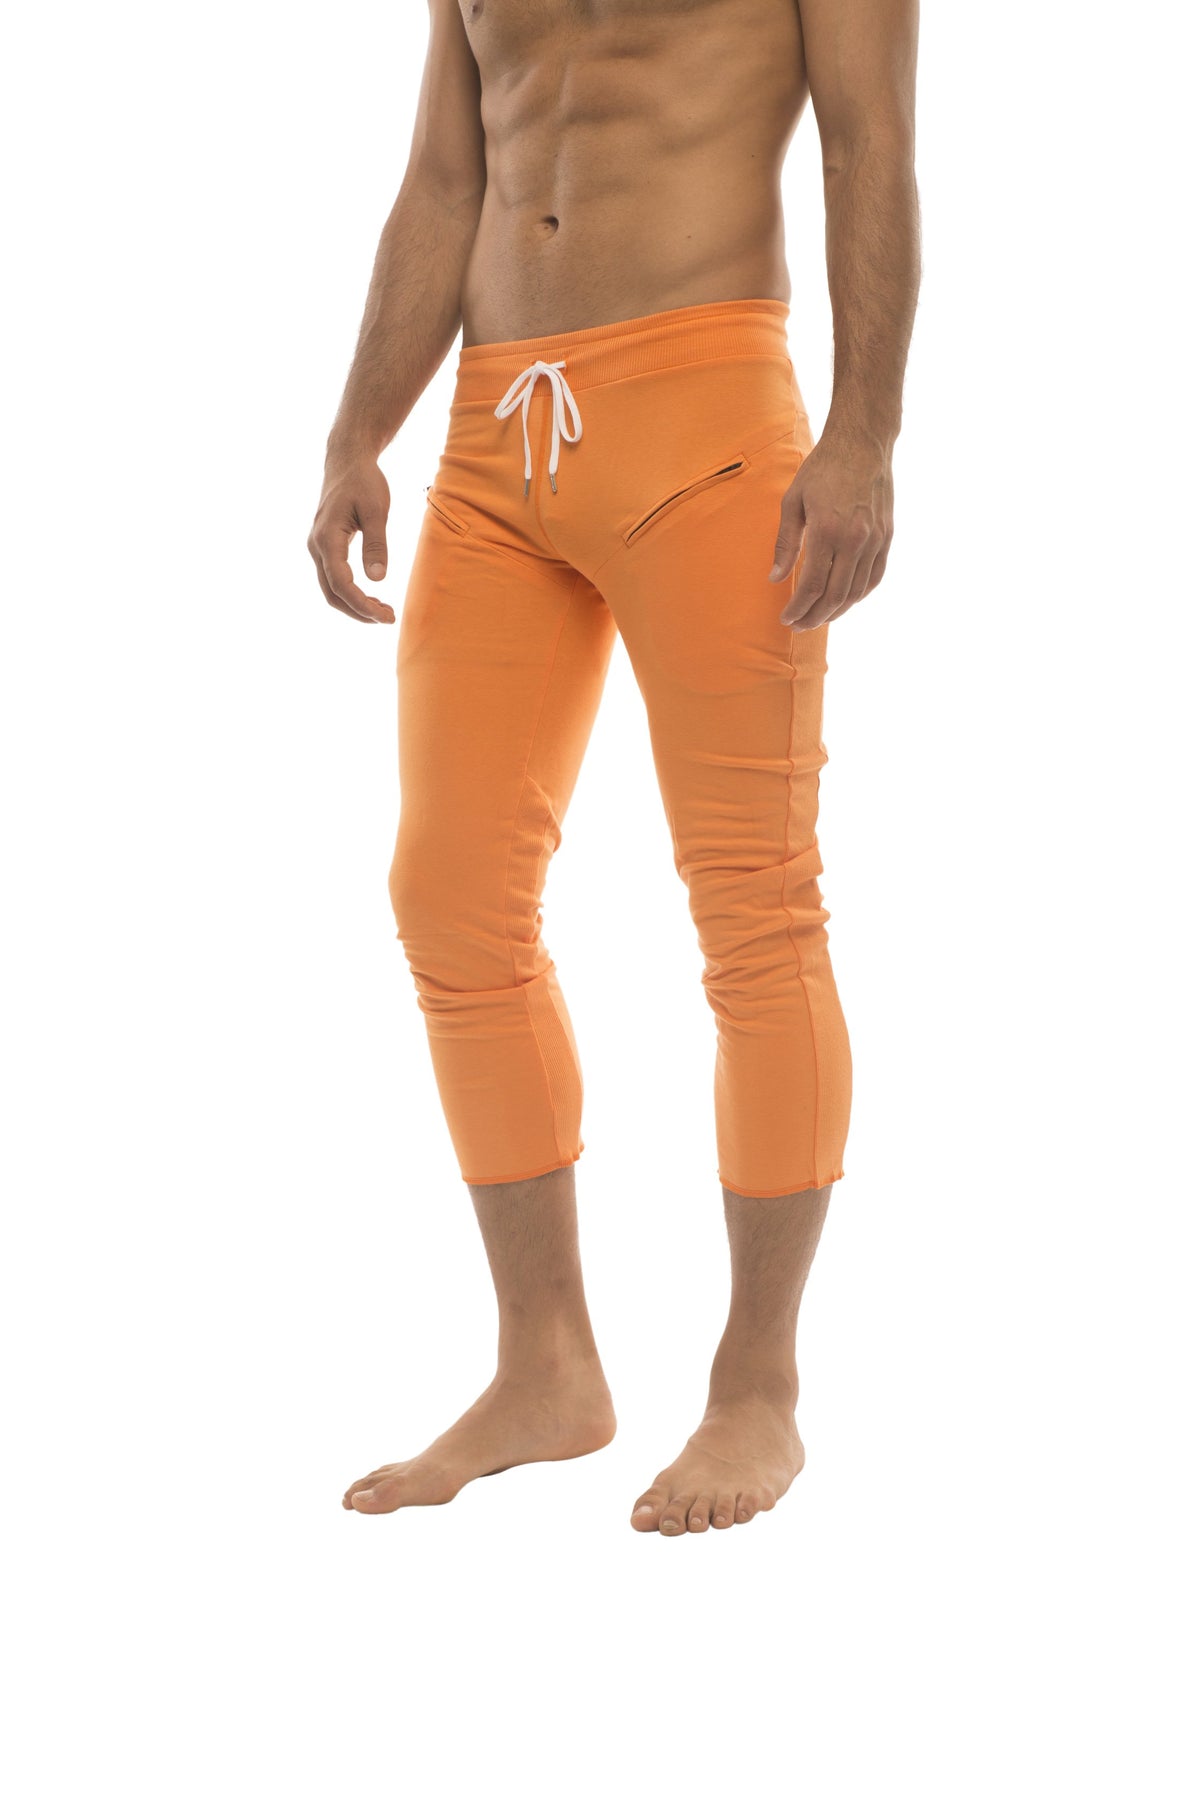 https://www.4-rth.com/cdn/shop/products/mens-45-zipper-pocket-capri-yoga-pants-solid-orange-capri-pants-4-rth-463410_1800x1800.jpg?v=1571671889